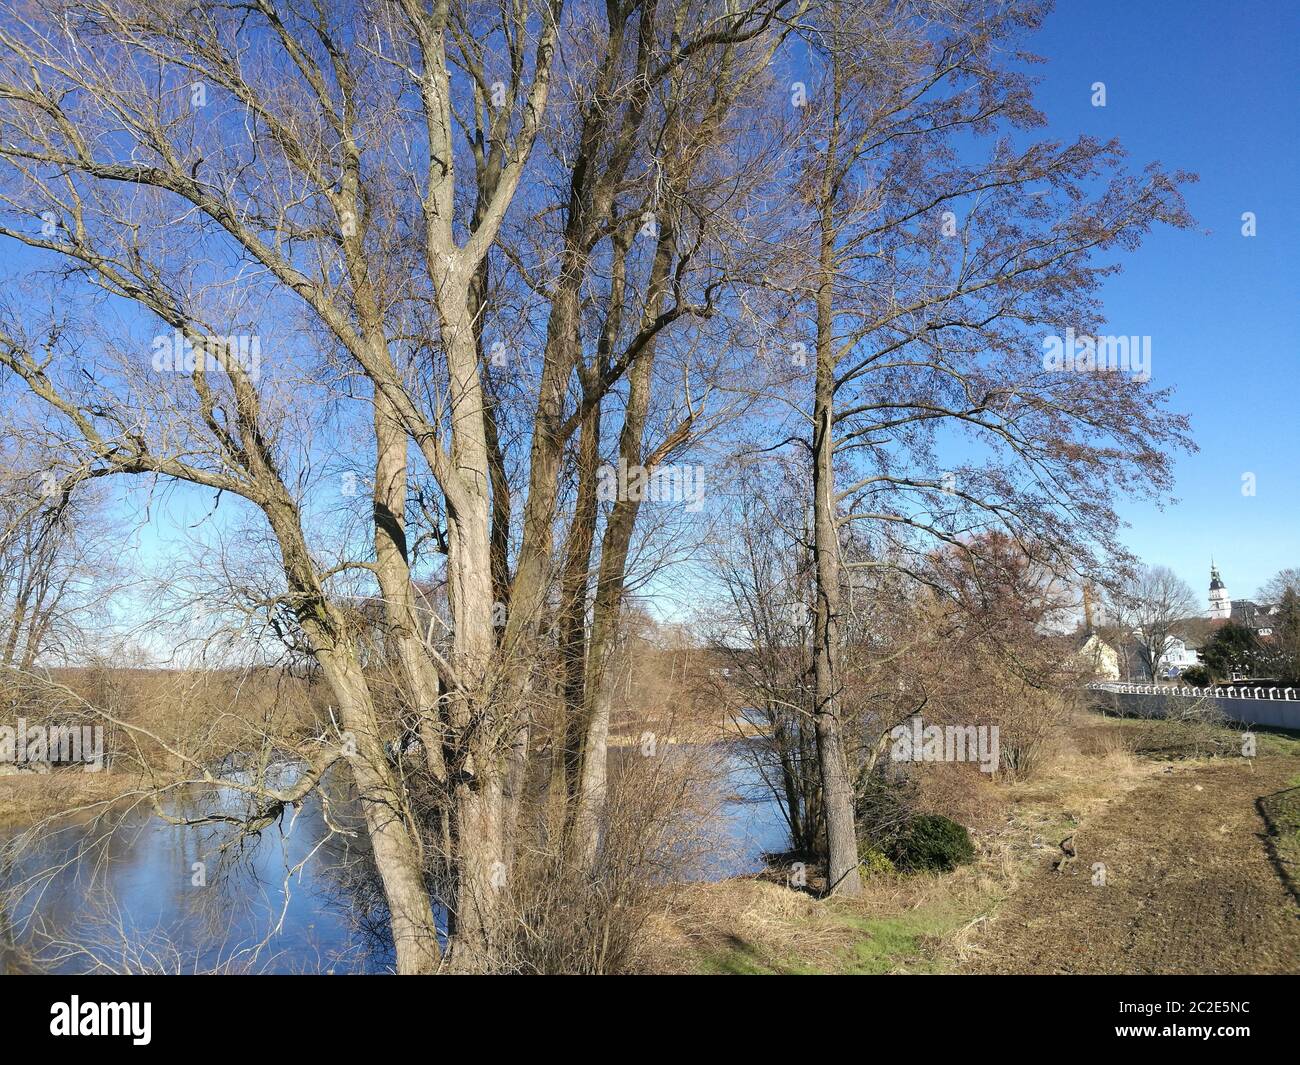 Kahle Bäume an der Zschopau in Sachsen, im Hintergrund die Kleinstadt Frankenberg, sonniger, schneefreier Tag mit blauem Himmel im Zschopautal am Rand Stock Photo